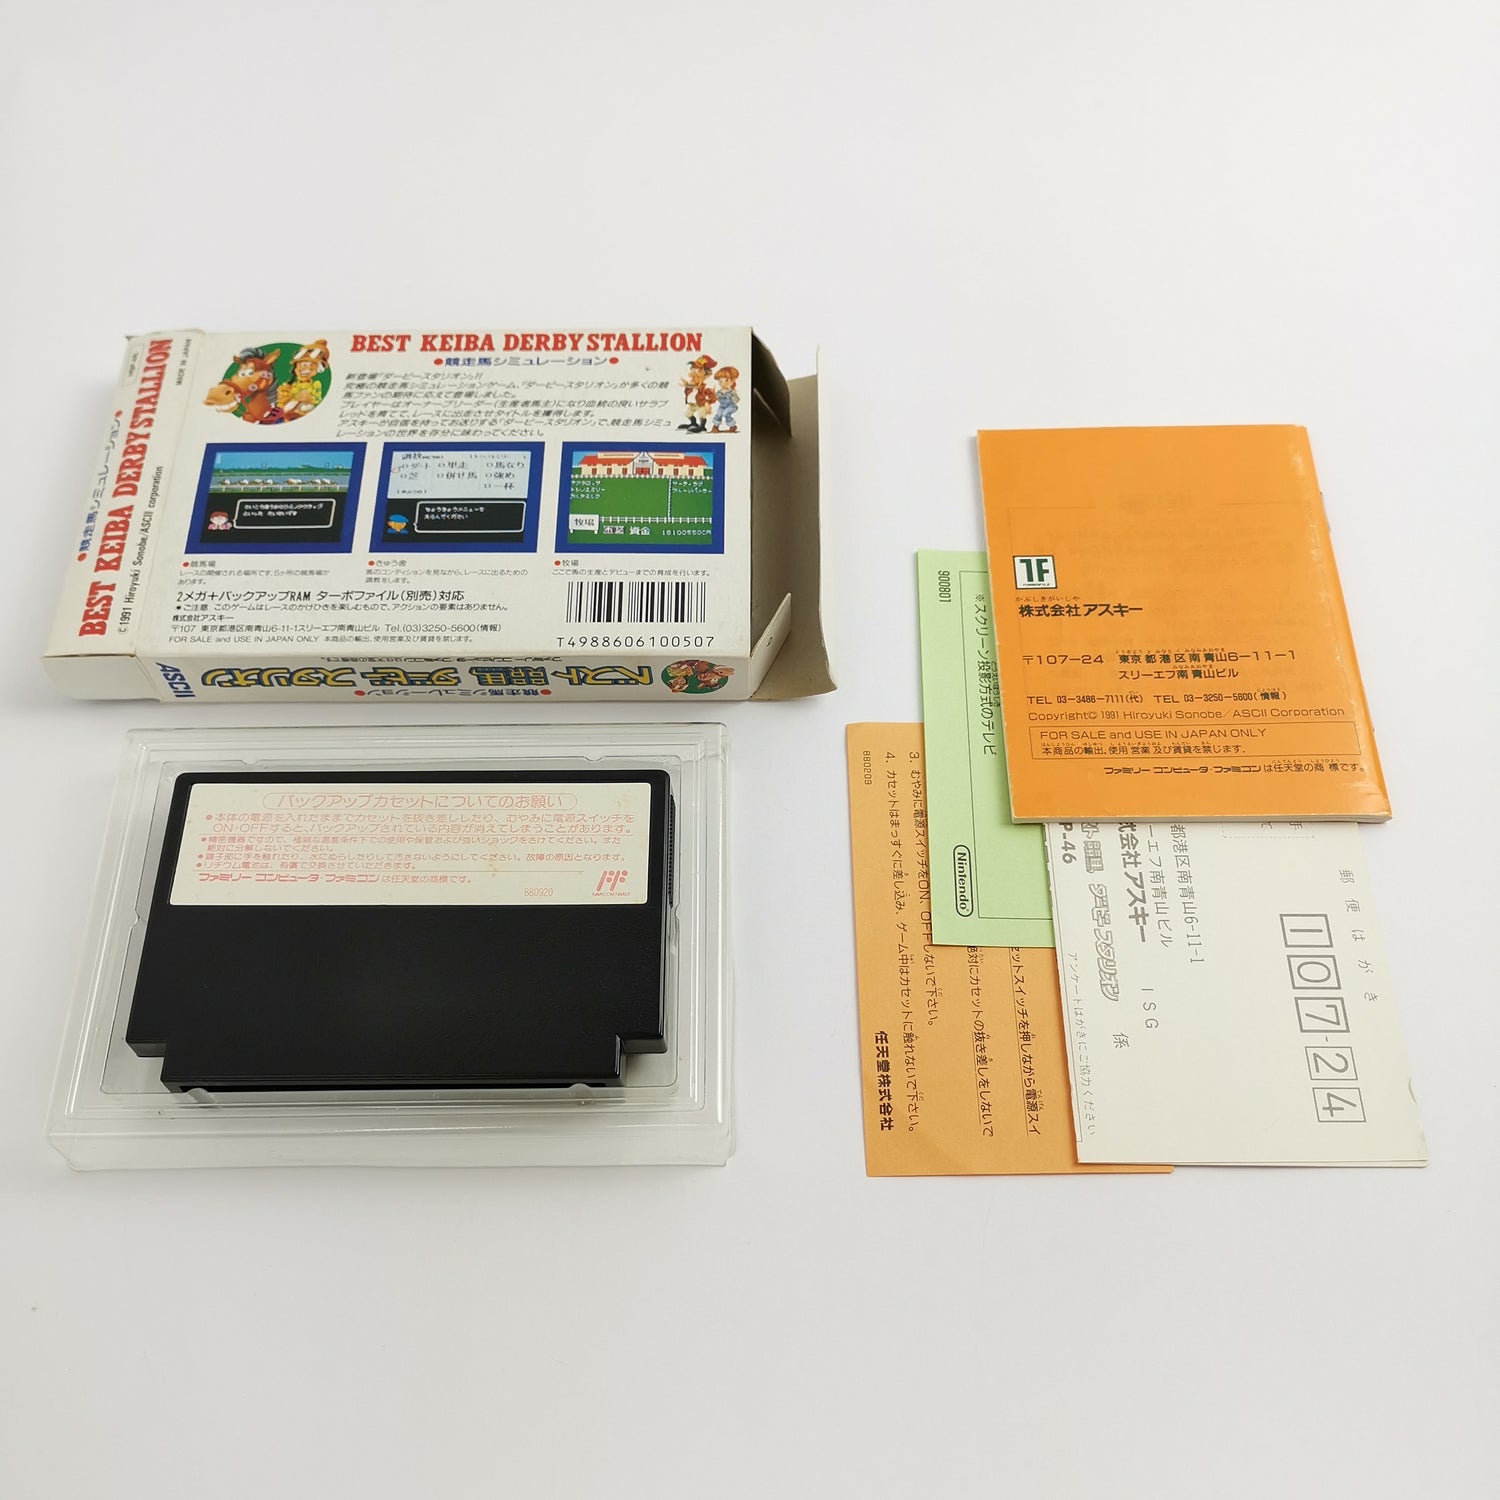 Nintendo Famicom Game 